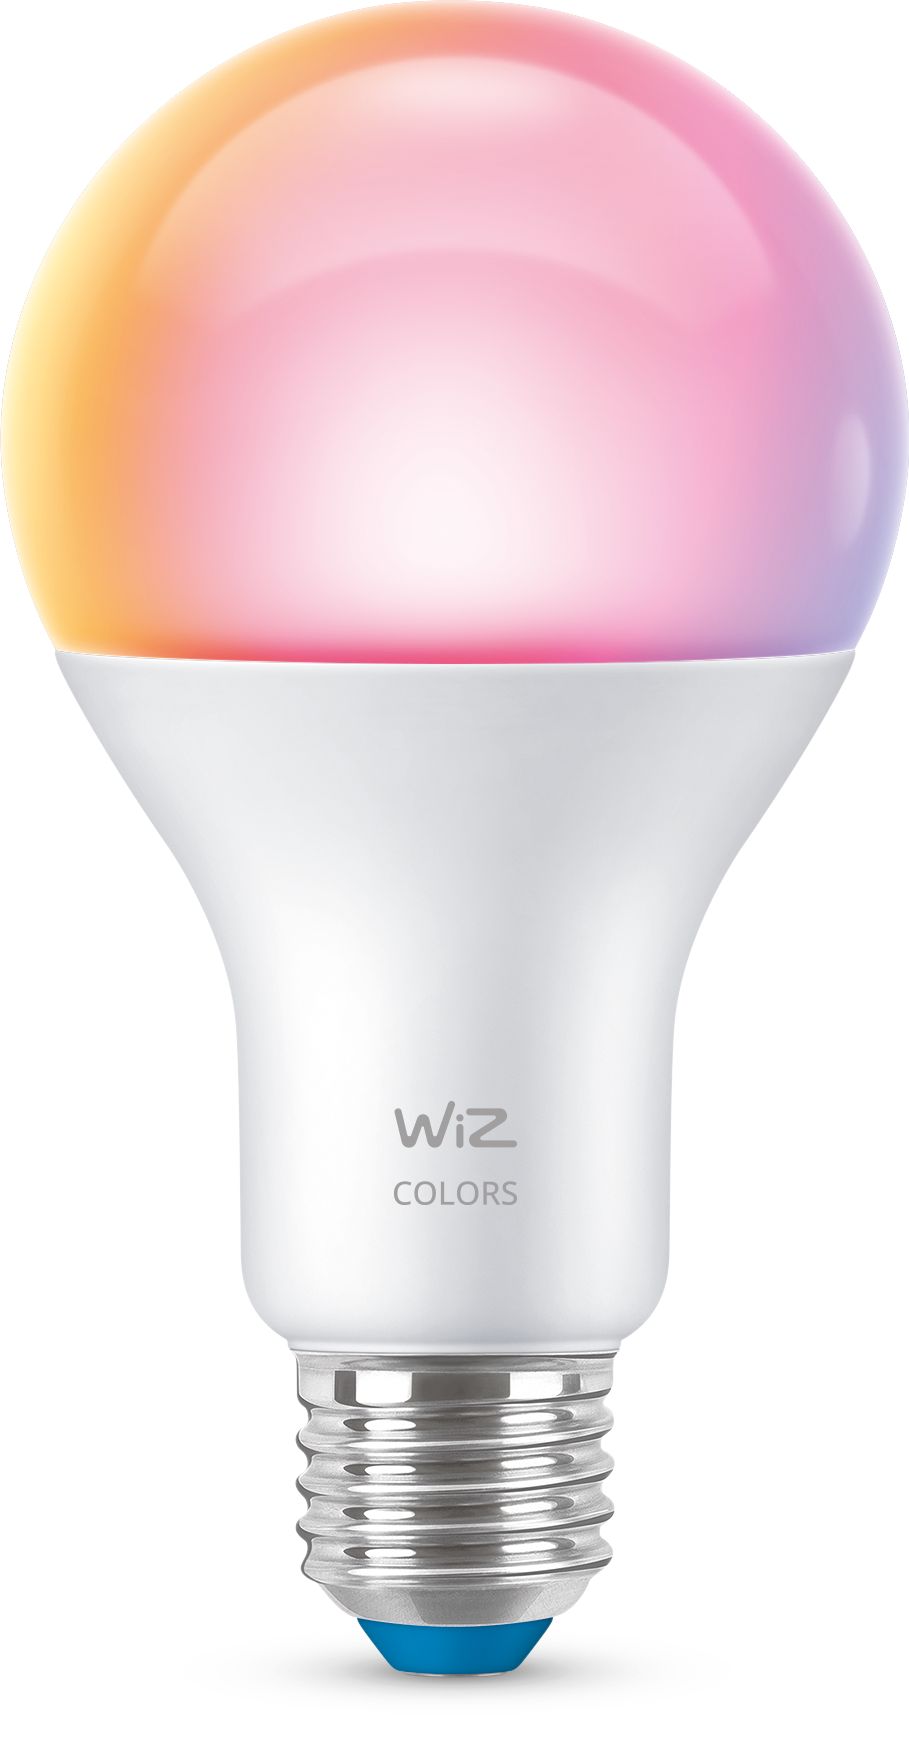 Foco blanco con LED integrados - Ezzio